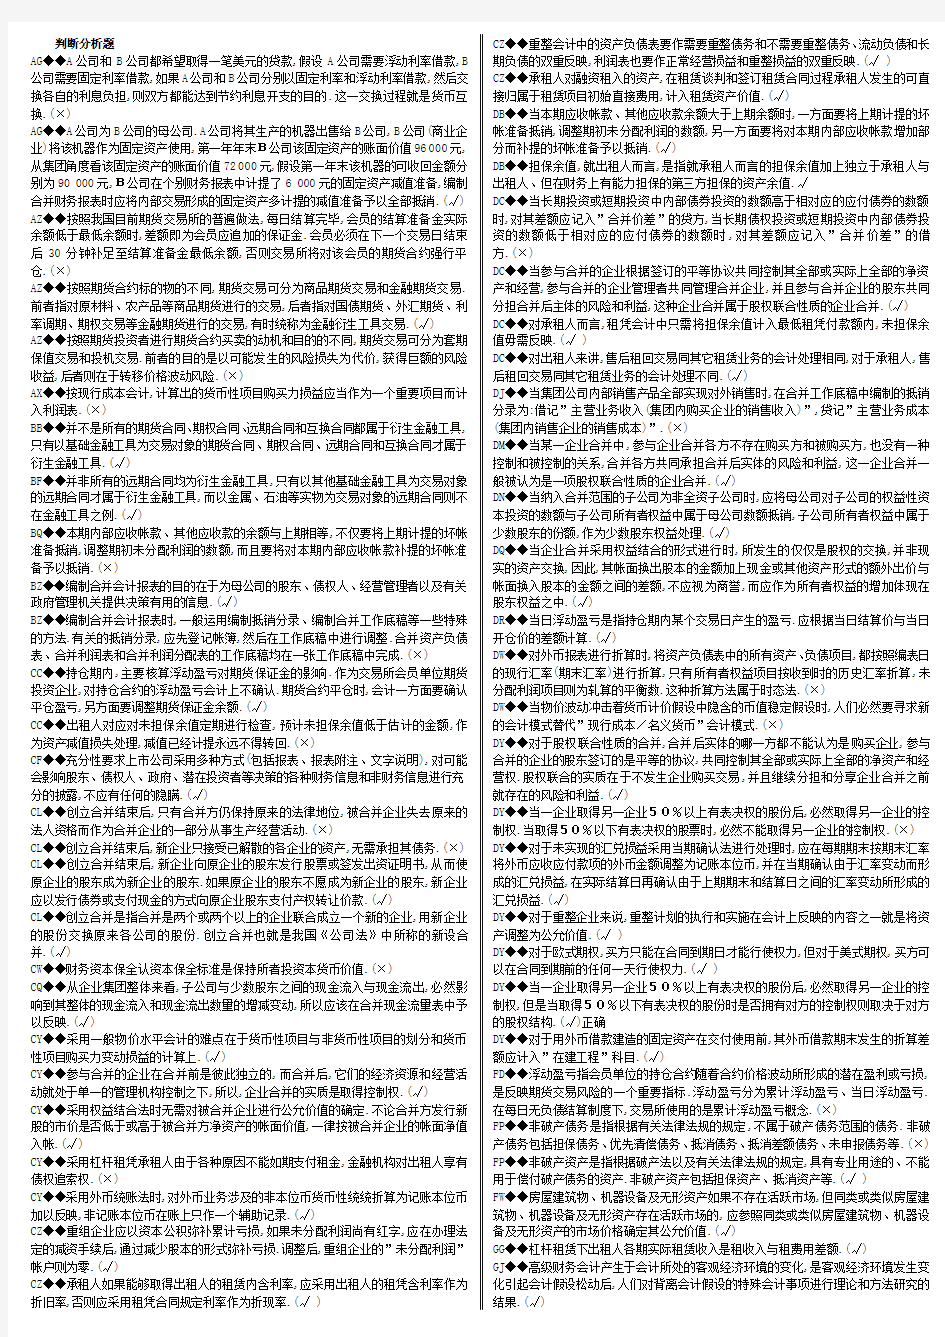 【2014】电大高级财务会计网考-判断题(全-精编版)全